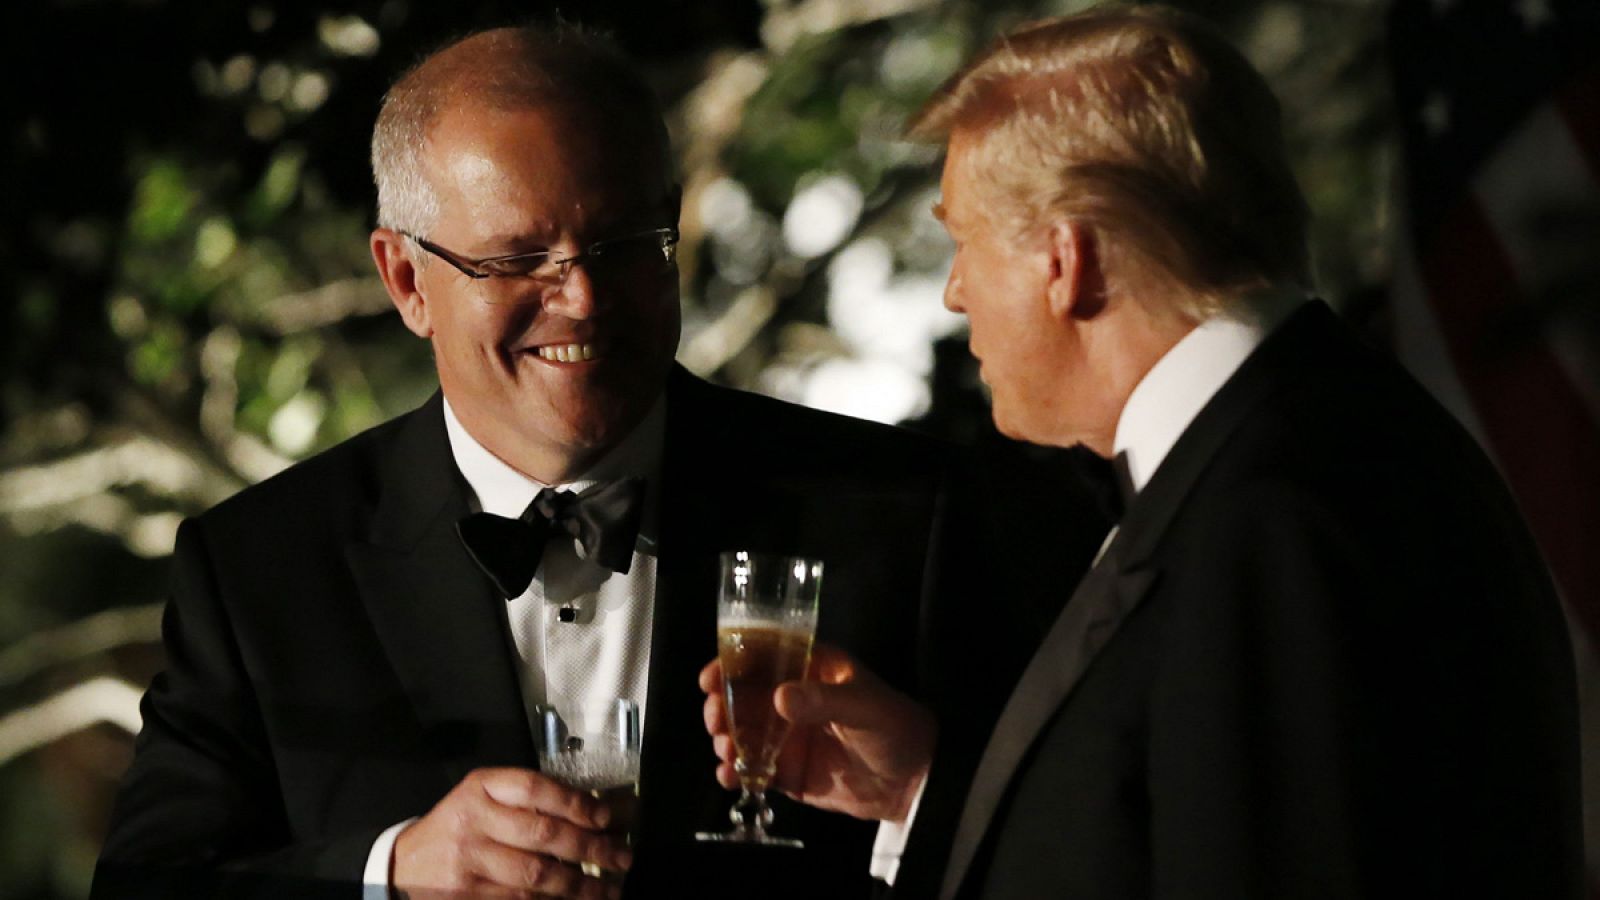 Trump presionó al primer ministro australiano para desacreditar la investigación de Mueller